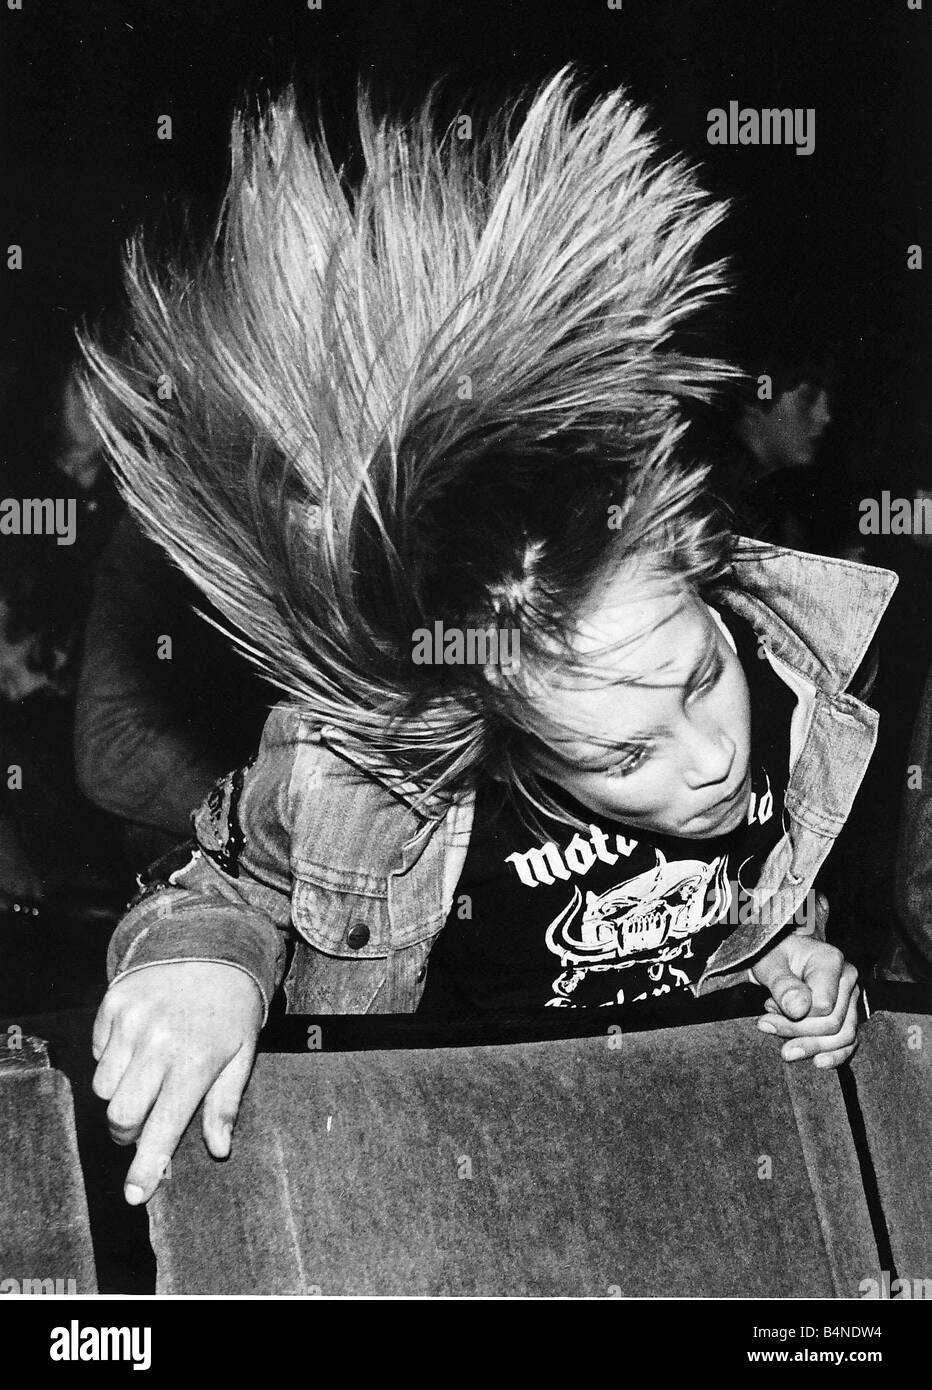 Die Heavy-Metal-Rock-Gruppe Motörhead-Fans machen jeder Augenblick zählt, wenn ihre Idole auf der Bühne sind, Leben bis zu ihrem Titel Headbangers und pochen ihre Schädel in alles in Reichweite April 1981 Stockfoto